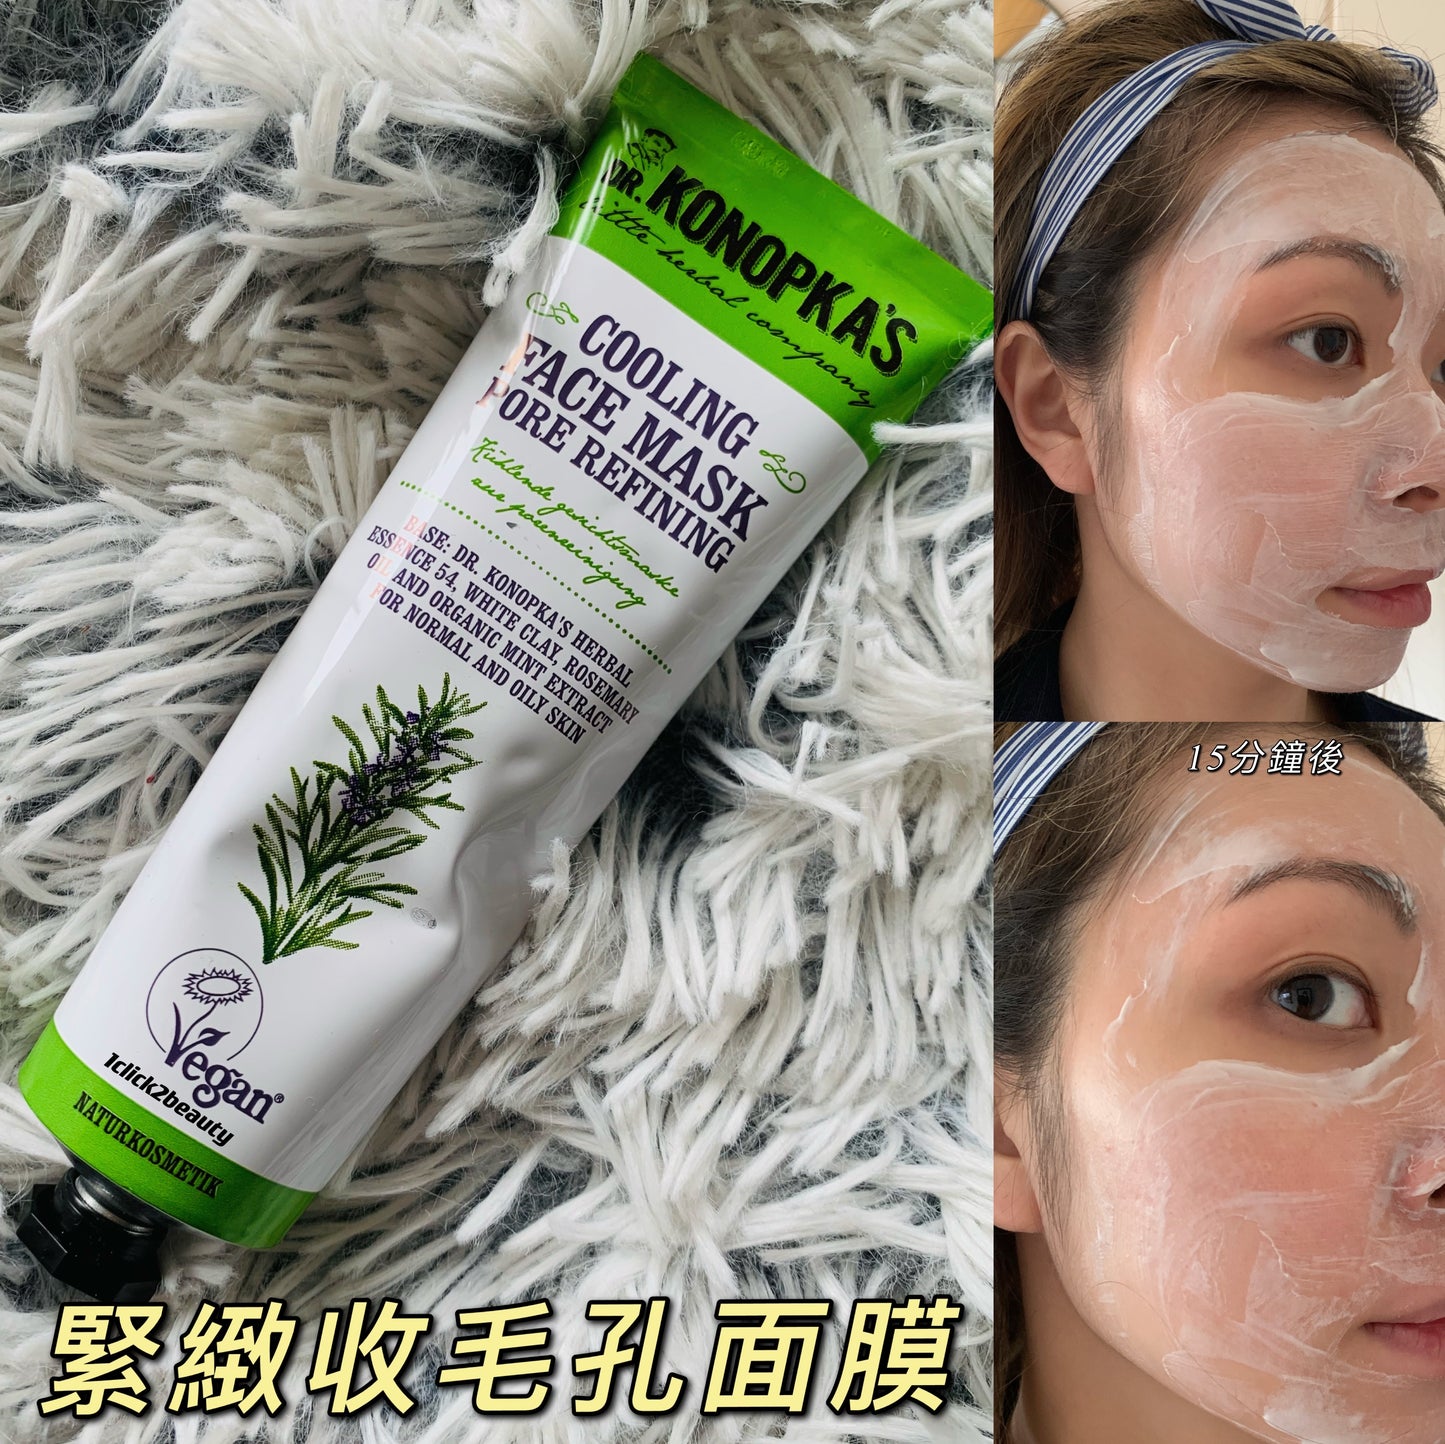 [CP 值爆燈🔥🔥]Dr Konopka’s Cooling pore refining Face Mask 花植毛孔深層清潔緊緻面膜 75ML